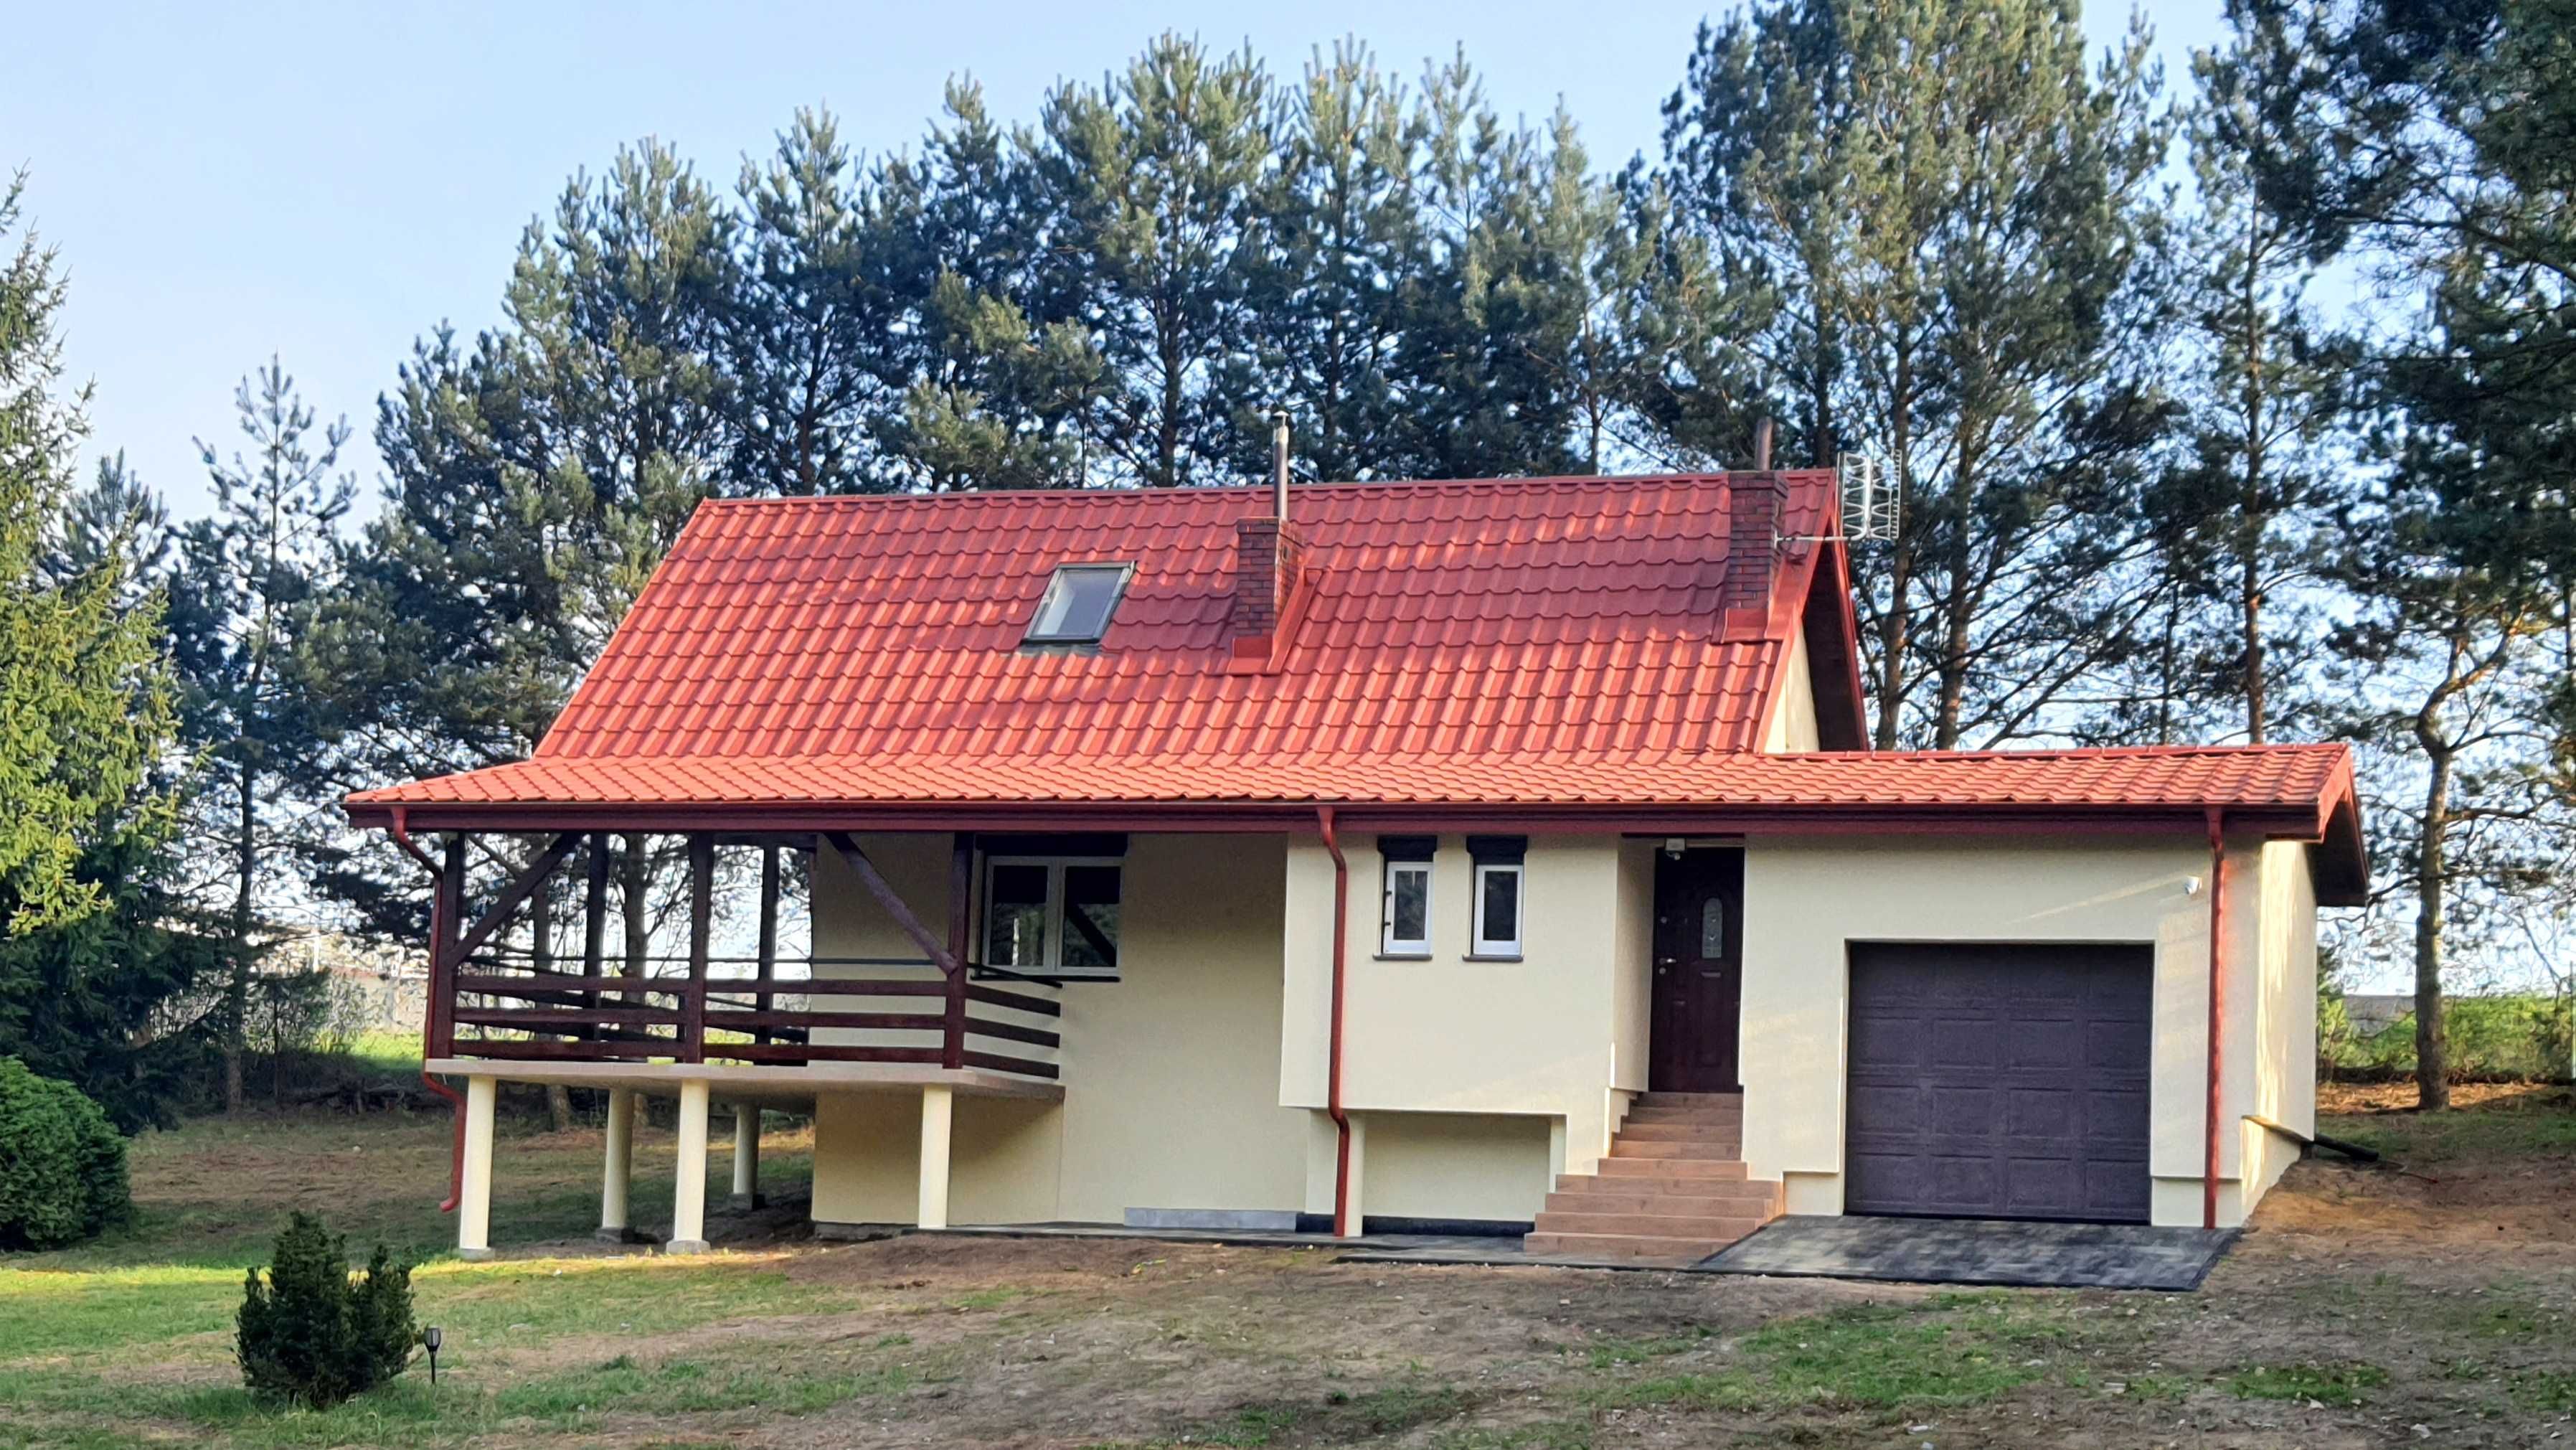 Odnowiony dom blisko rzeki Wkra 2007r 92m2 + taras 27m2, dz. 2945m2